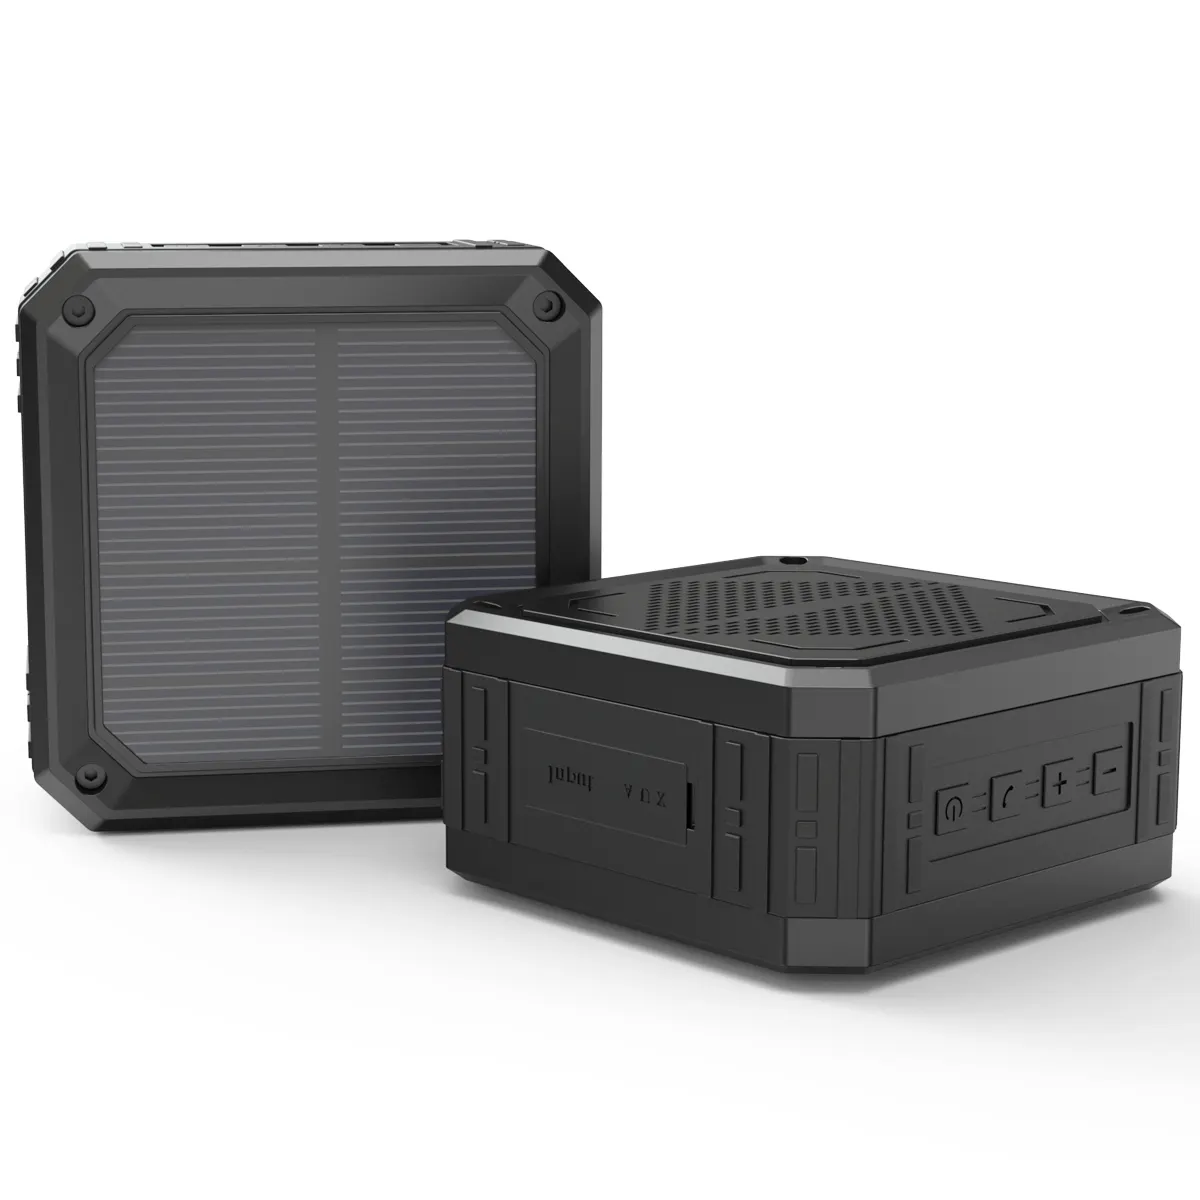 T83 haut-parleur solaire Portable, résistant aux chocs, 1200mAh, Rechargeable IPX6, étanche, Bluetooth